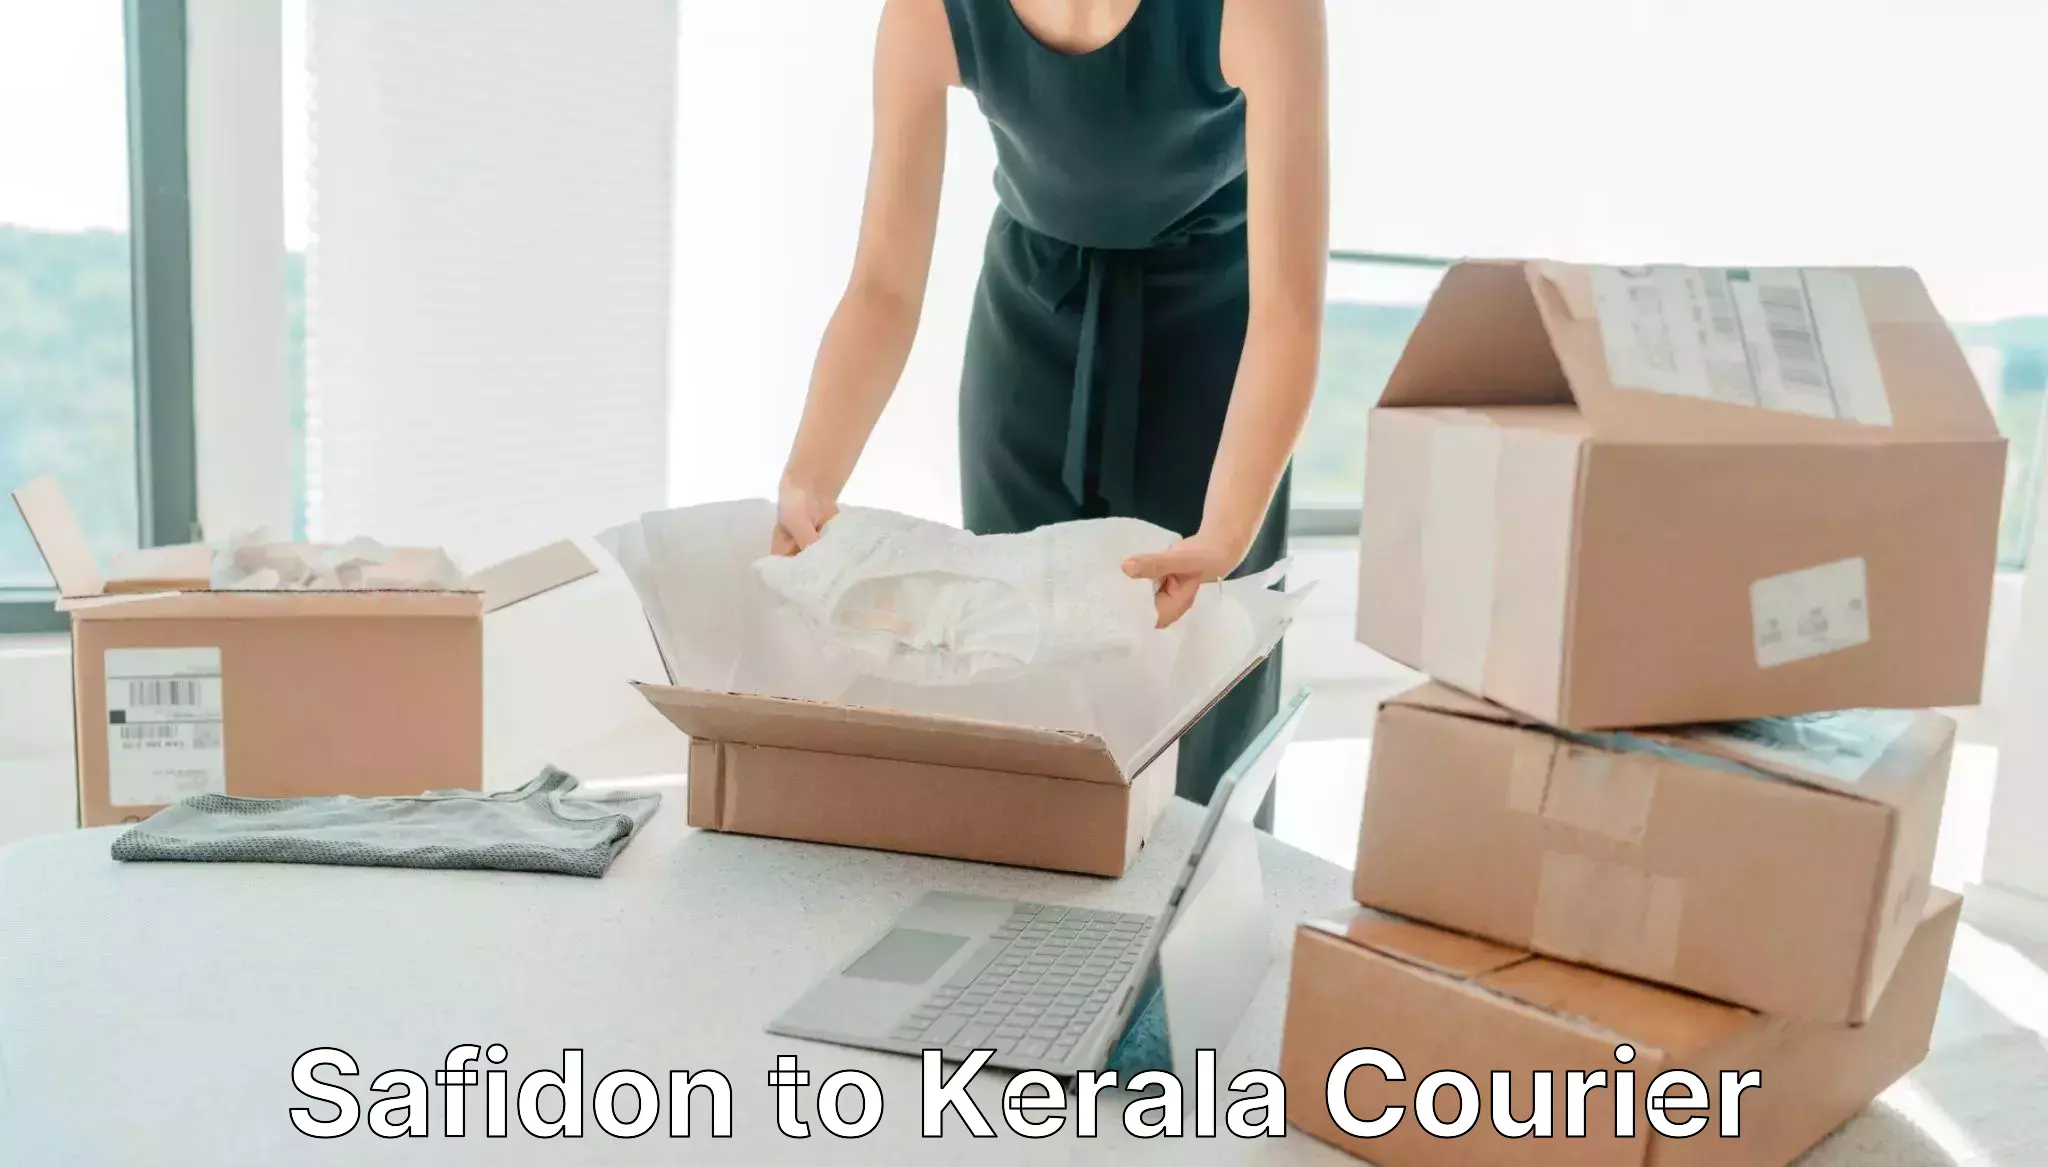 Local delivery service Safidon to Cochin Port Kochi